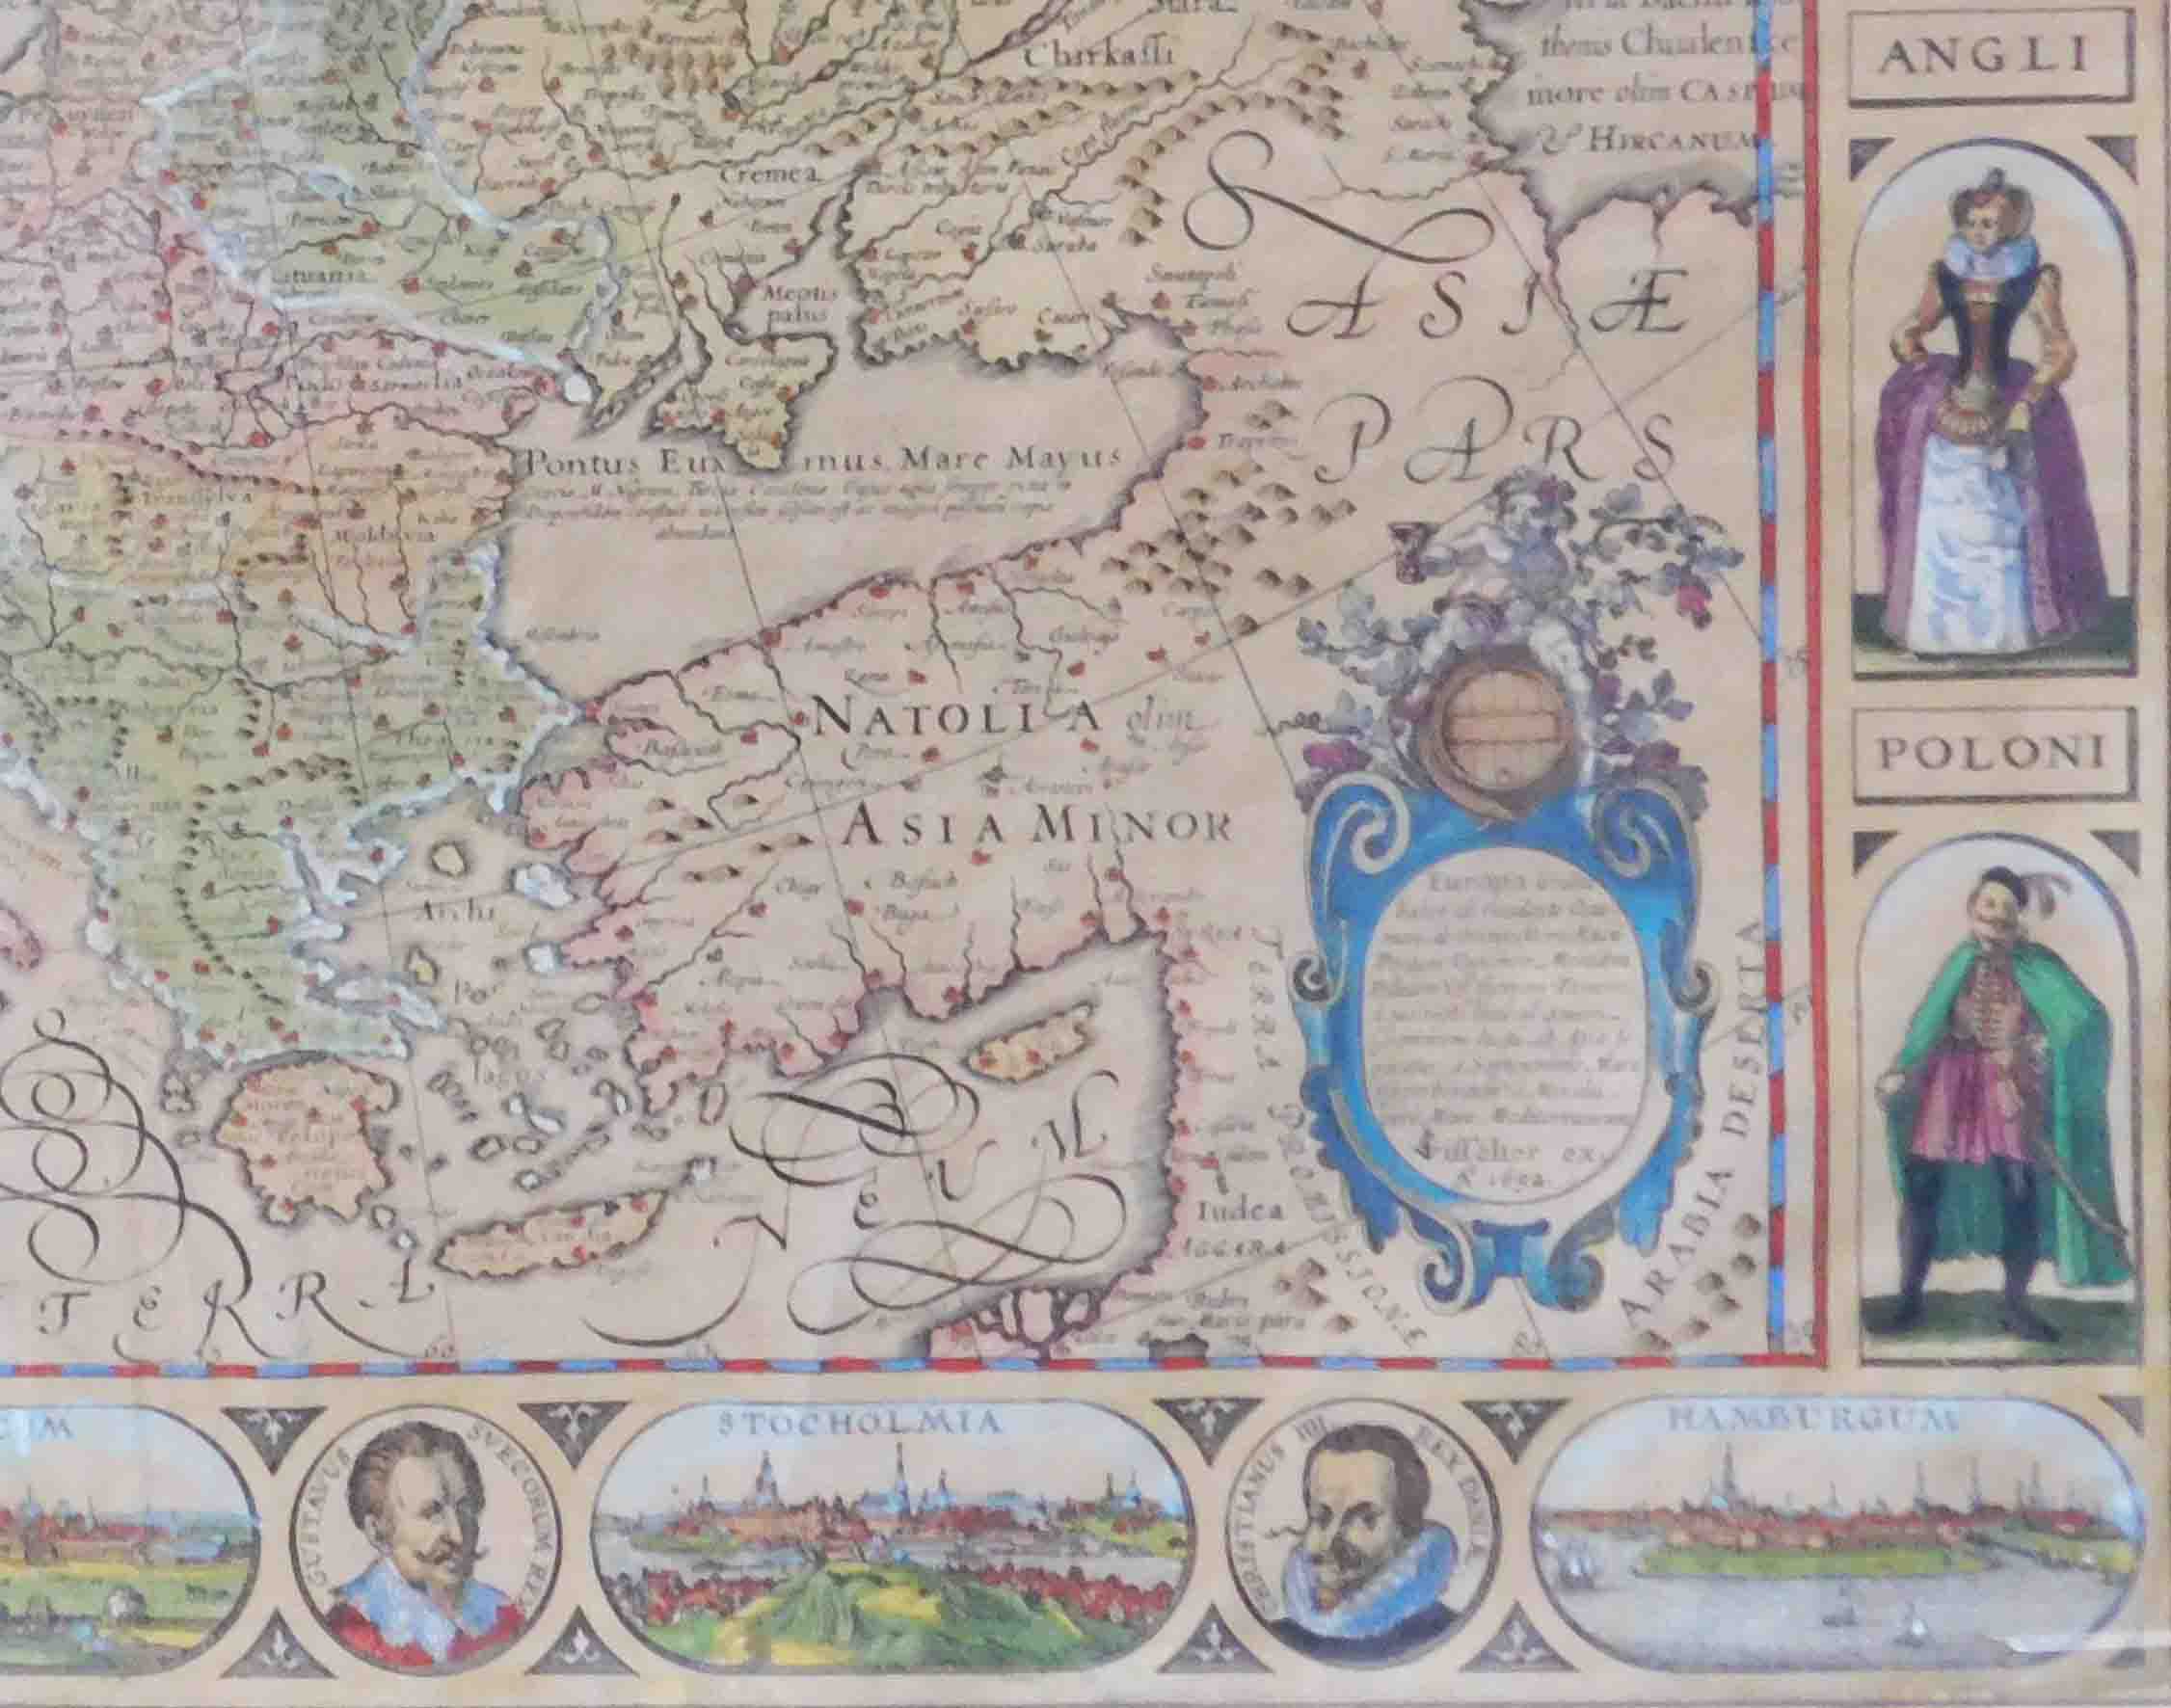 3 x Historische Karten. Afrika, Europa, Welt. - Image 16 of 27